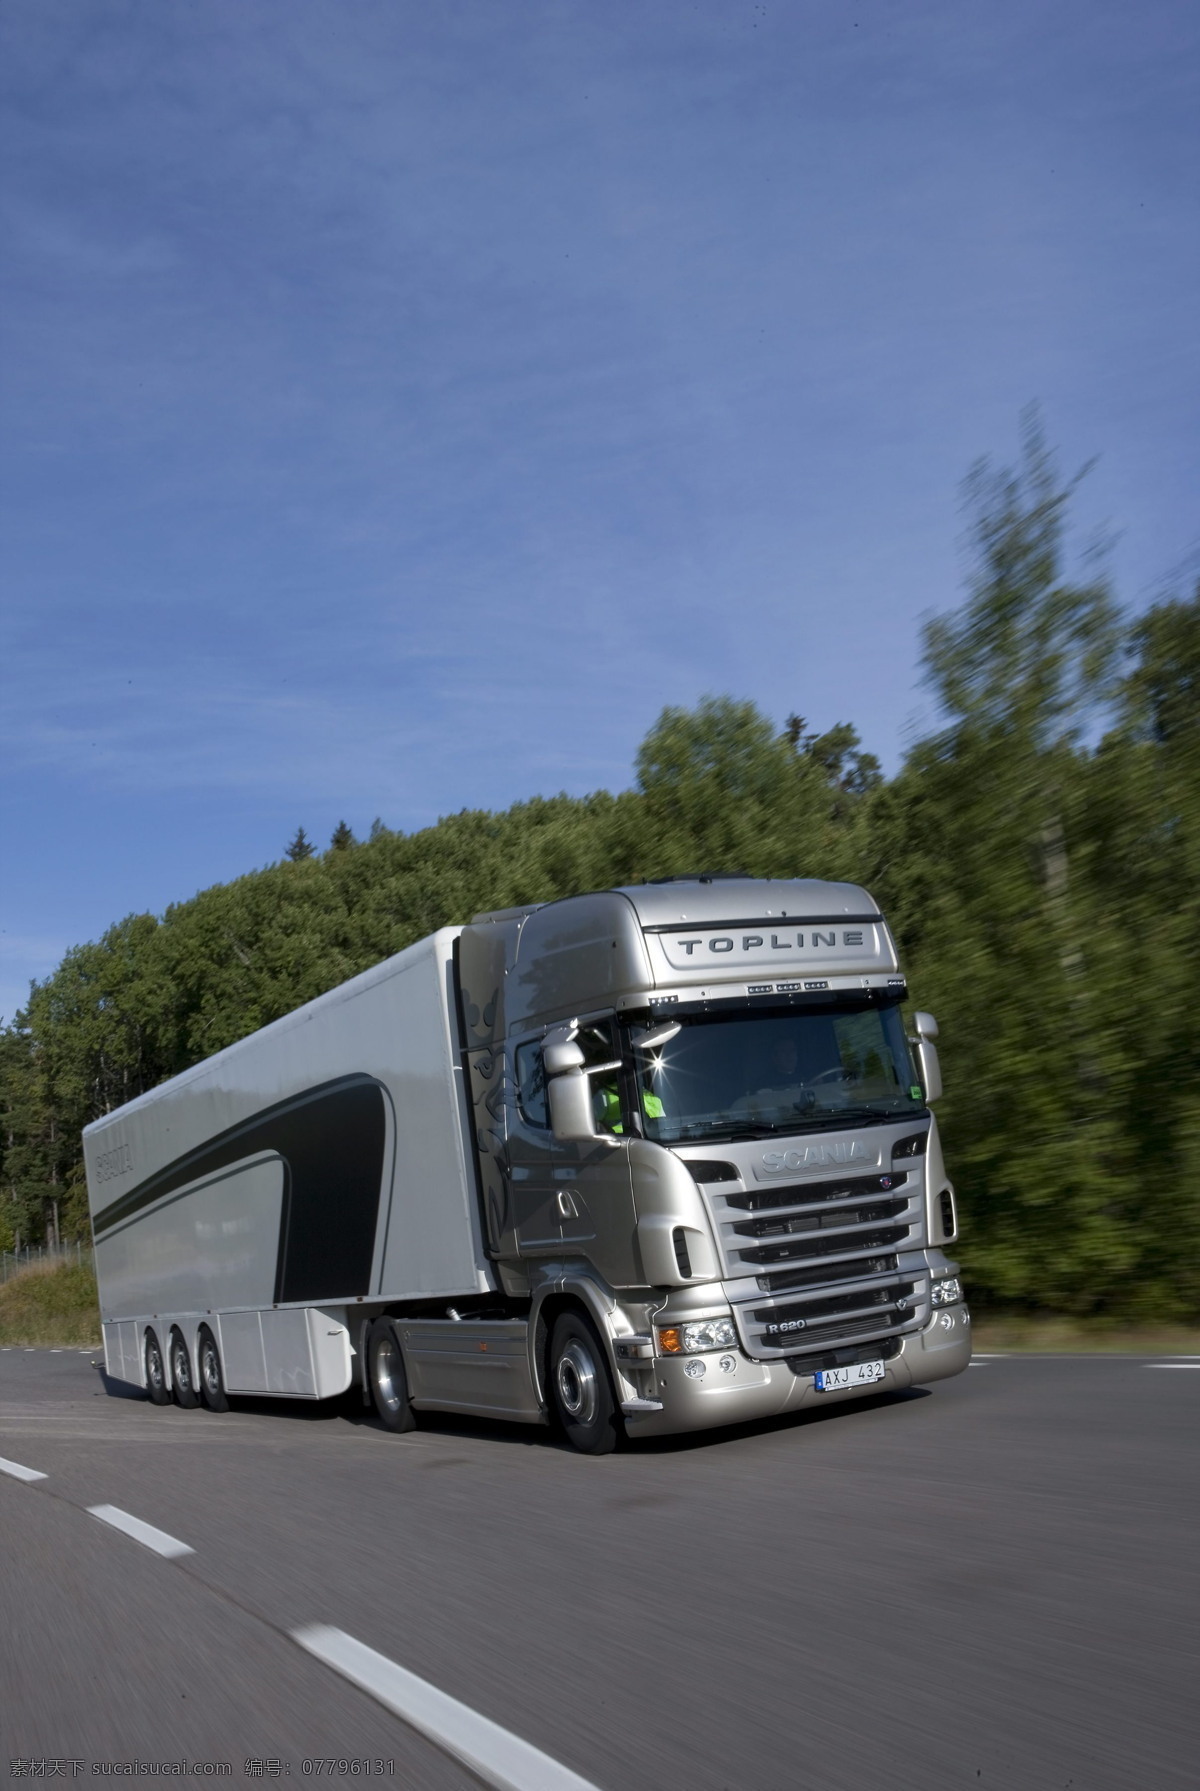 斯堪尼亚 厢式货车 重型卡车 大车头 加长型车身 柴油发动机 大马力 大吨位 运输工具 载重卡车 瑞典生产制造 现代交通工具 交通工具 现代科技